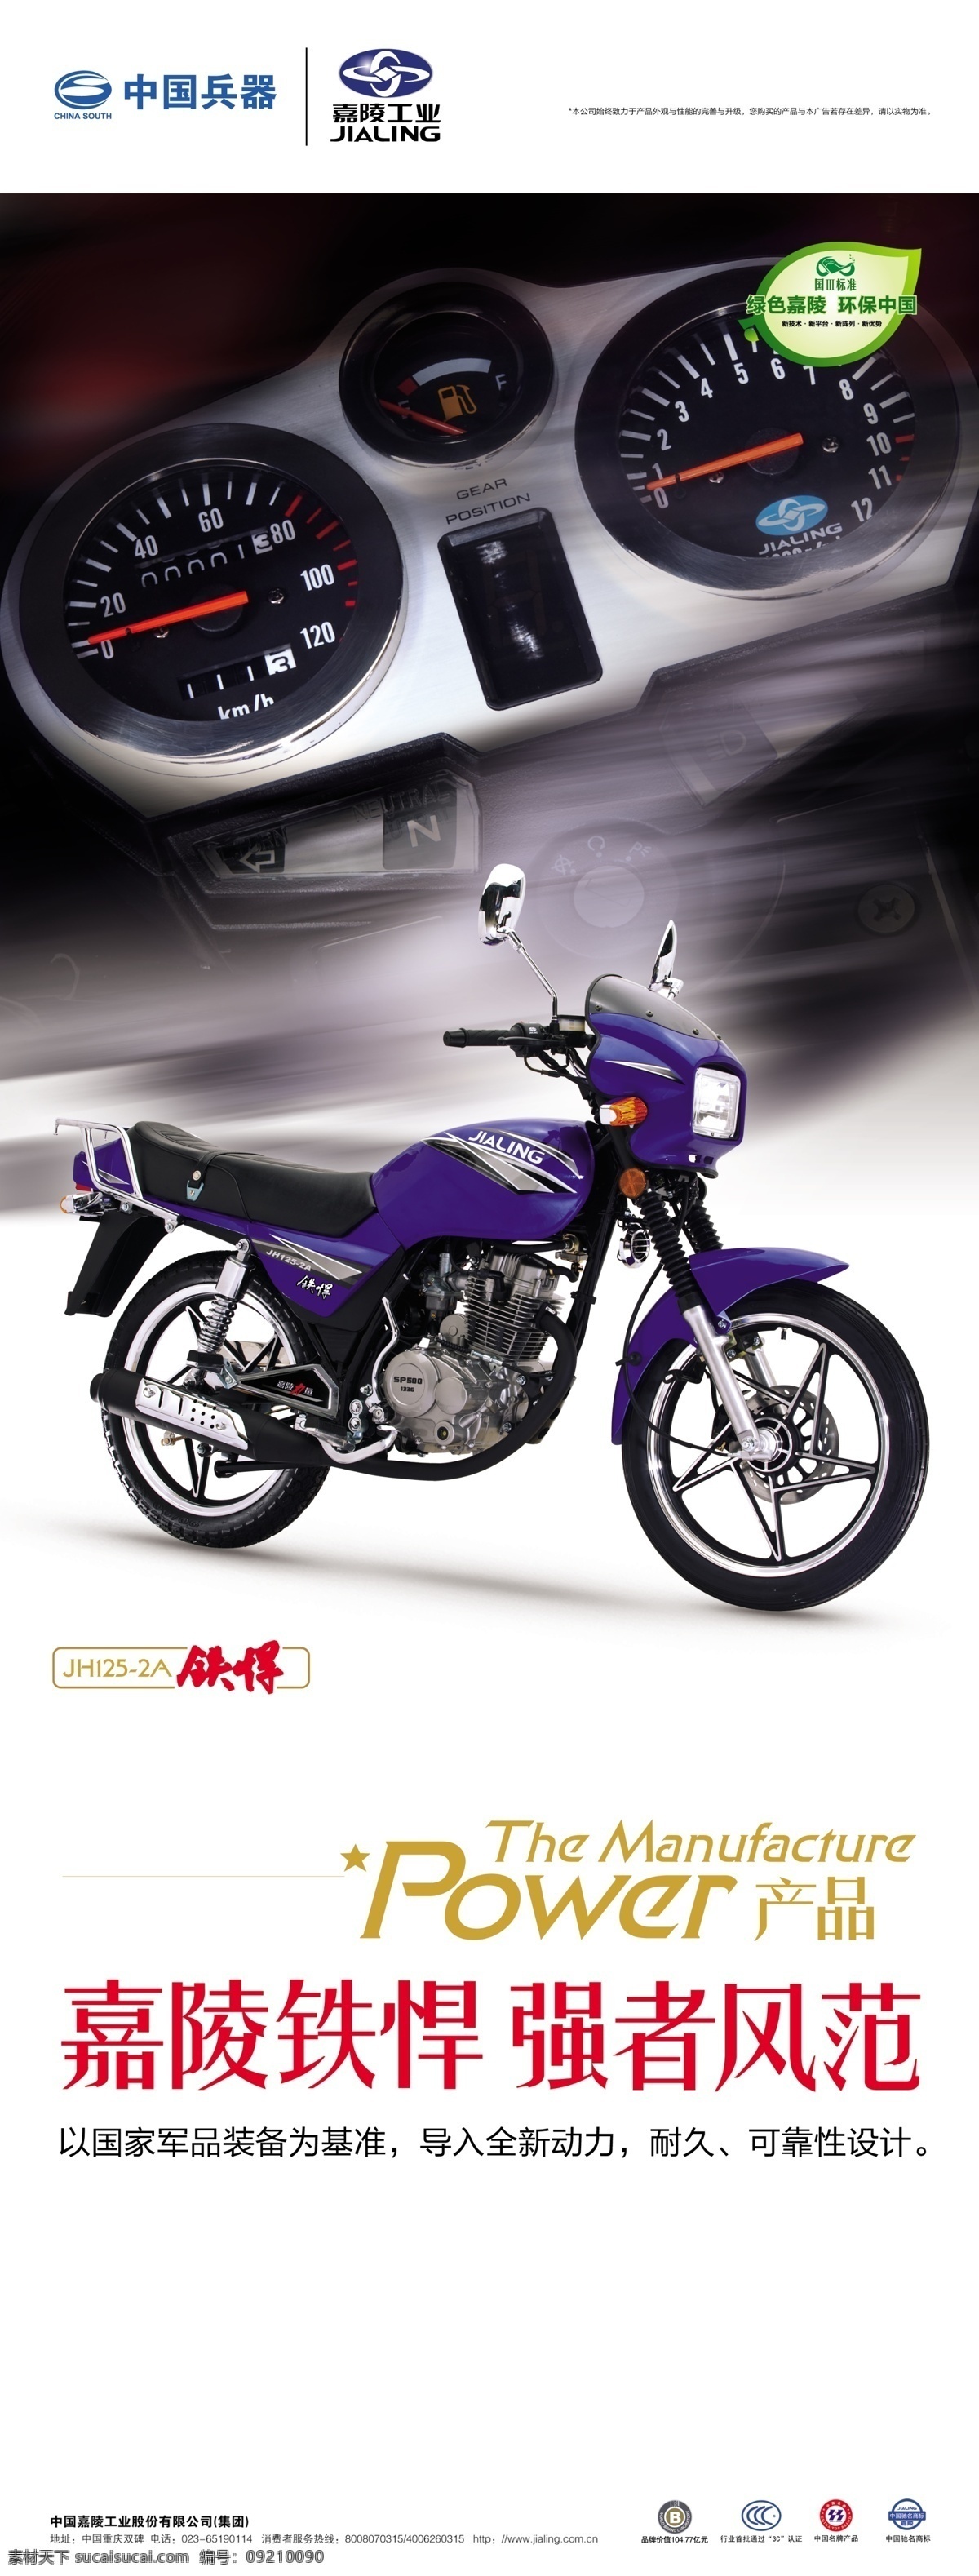 嘉陵摩托 模版下载 x展架 易拉宝 摩托车 中国兵器 logo 商标 铁悍 广告设计模板 源文件 展板模板